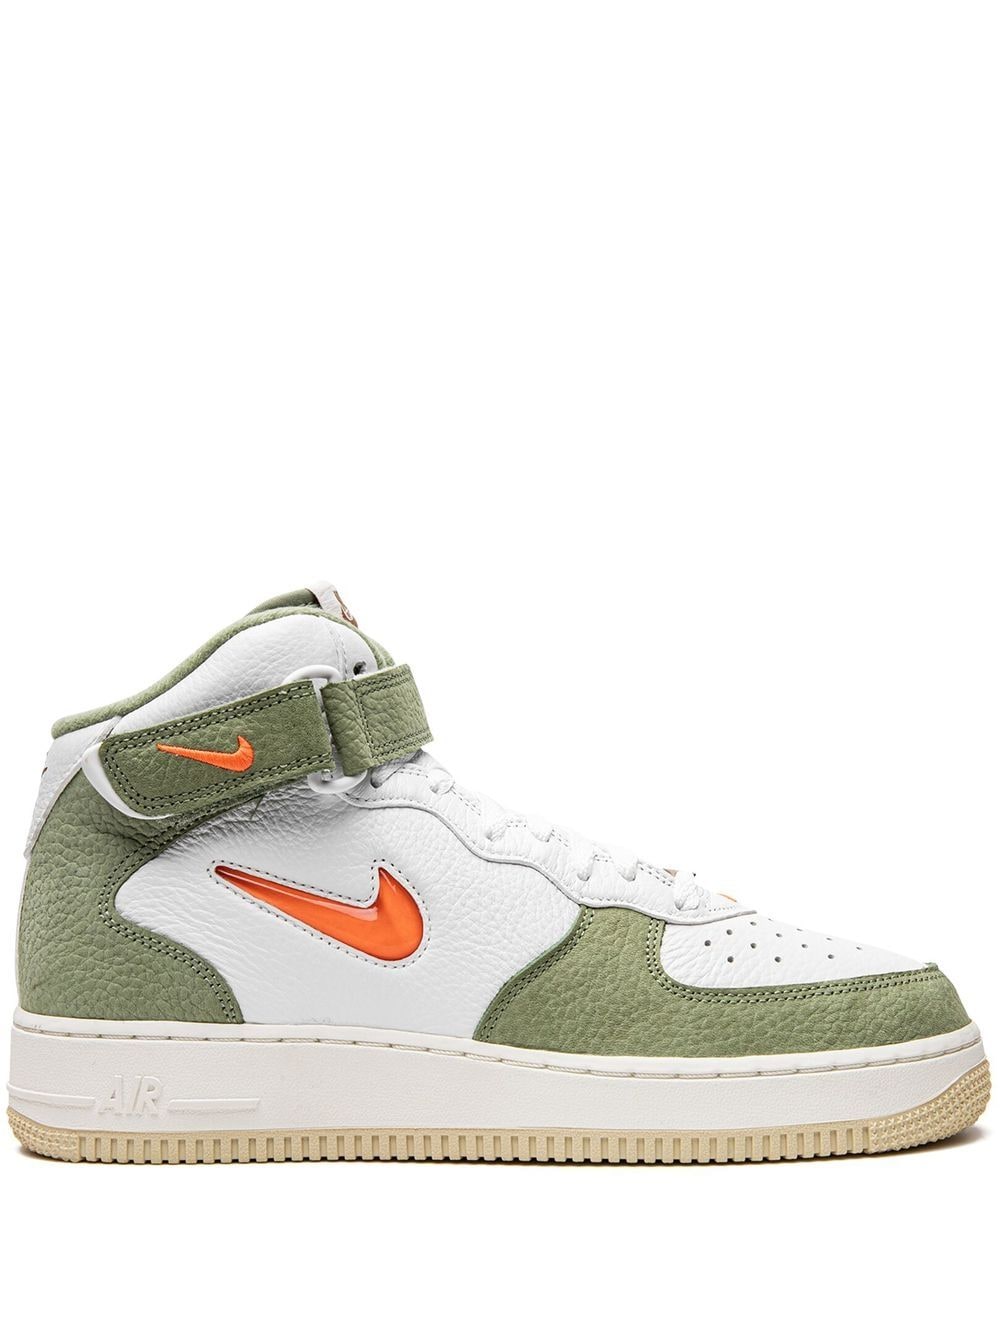 Las Nike Air Force 1 Oil Green son las zapatillas para ser el más  elegante sin renunciar al color